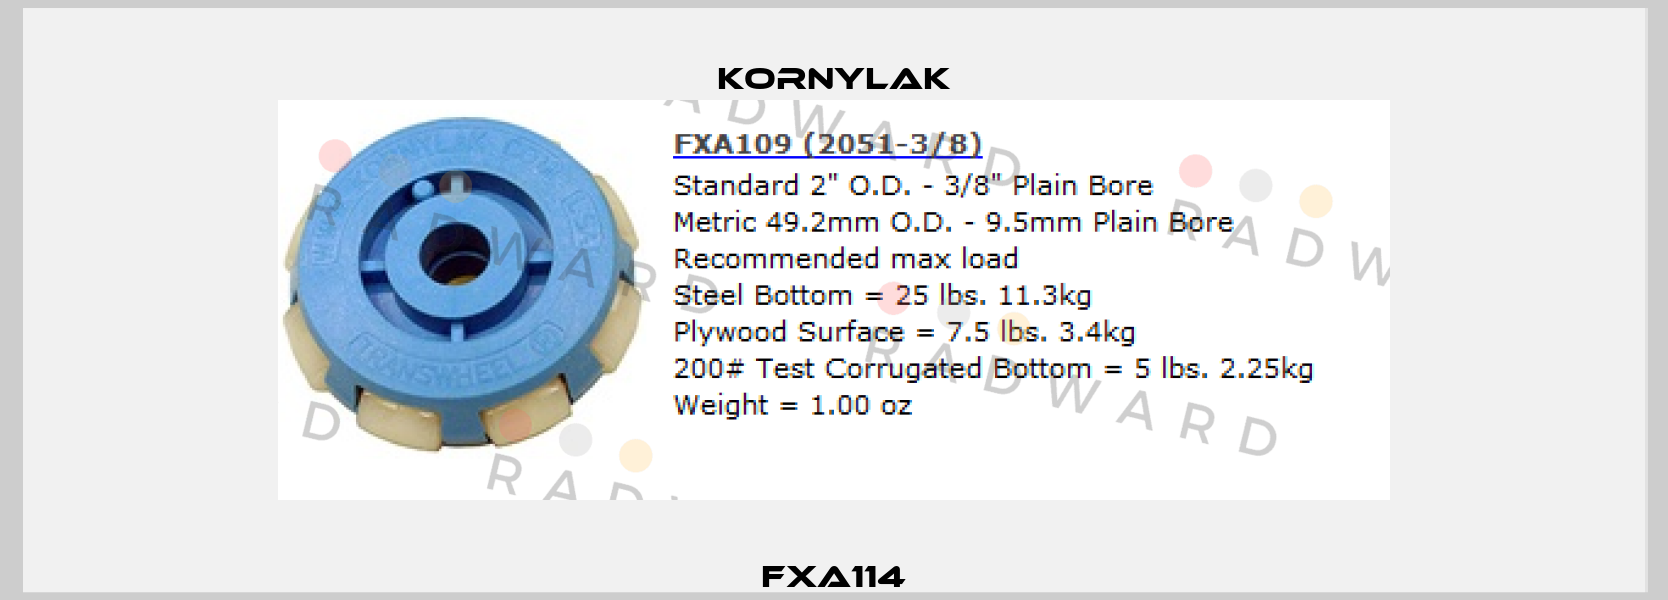 FXA114 Kornylak